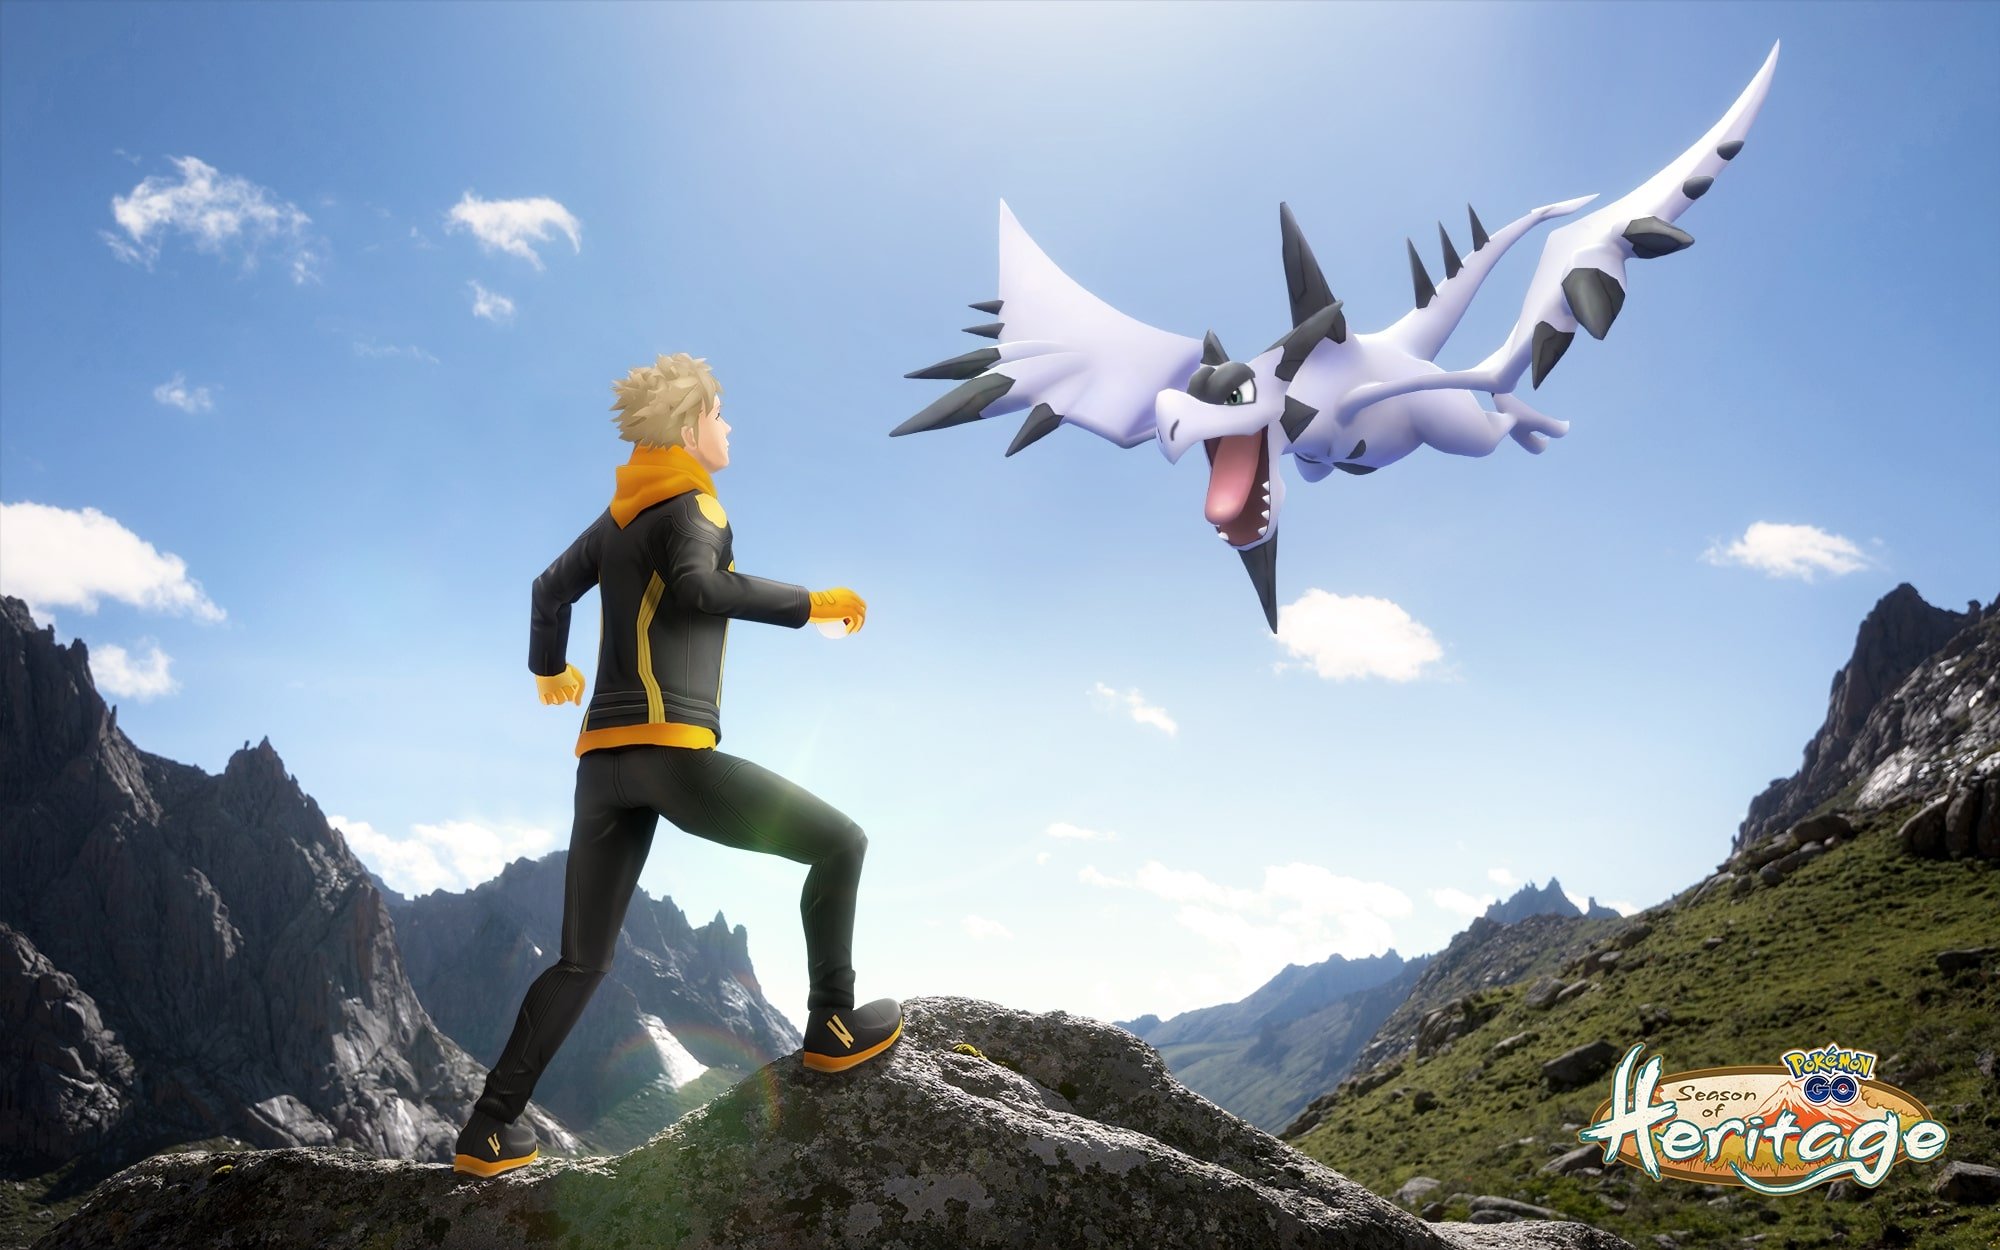 Shiny Mega Aerodactyl Raid-Evolution Pokemon Go Mountain Event